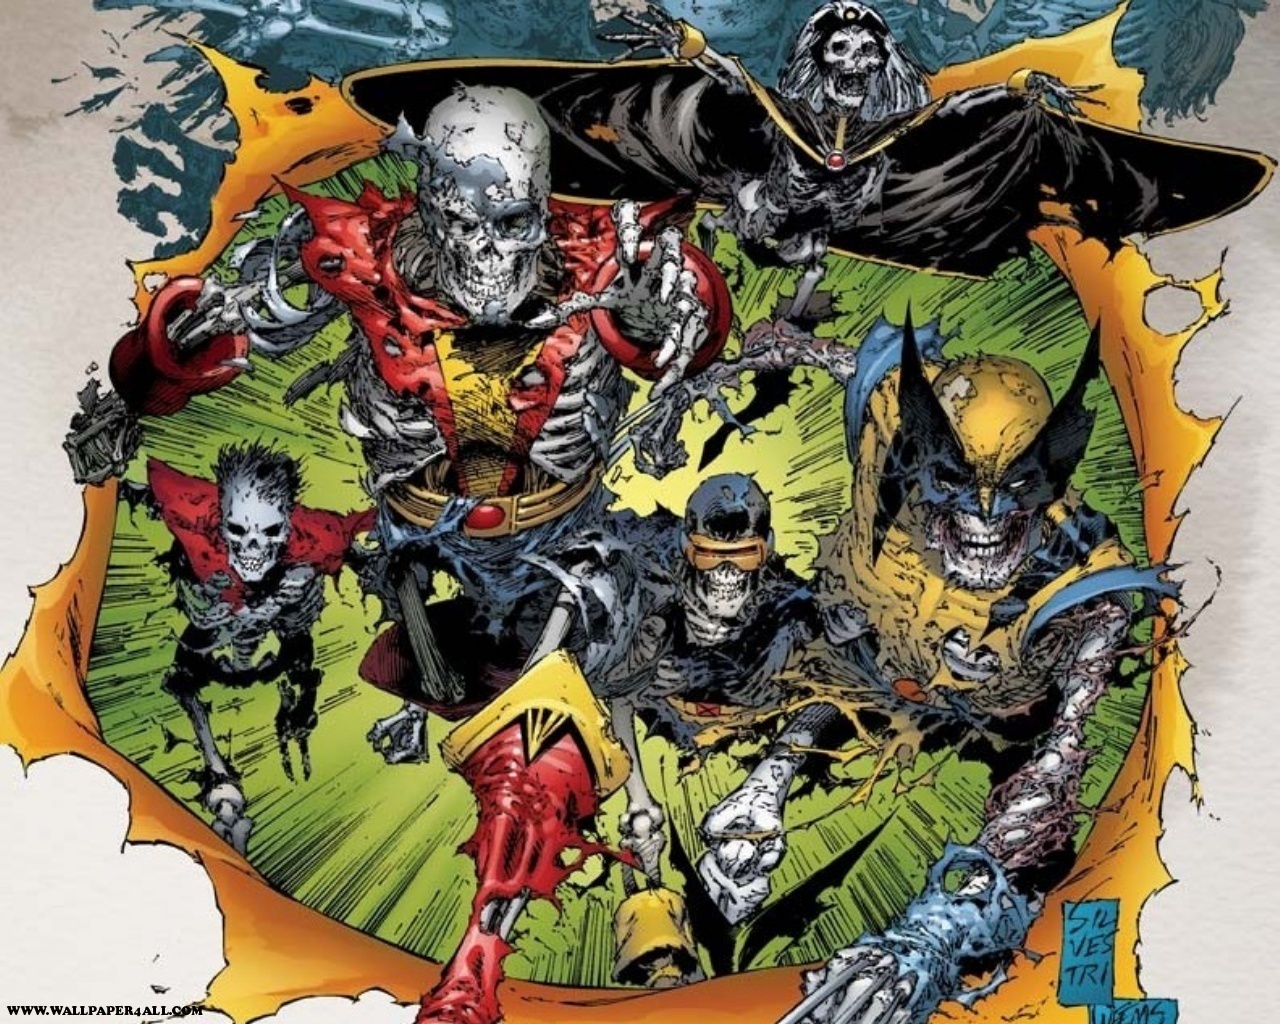 Undead X-Men - Marvel Comics Wallpaper (9263026) - Fanpop